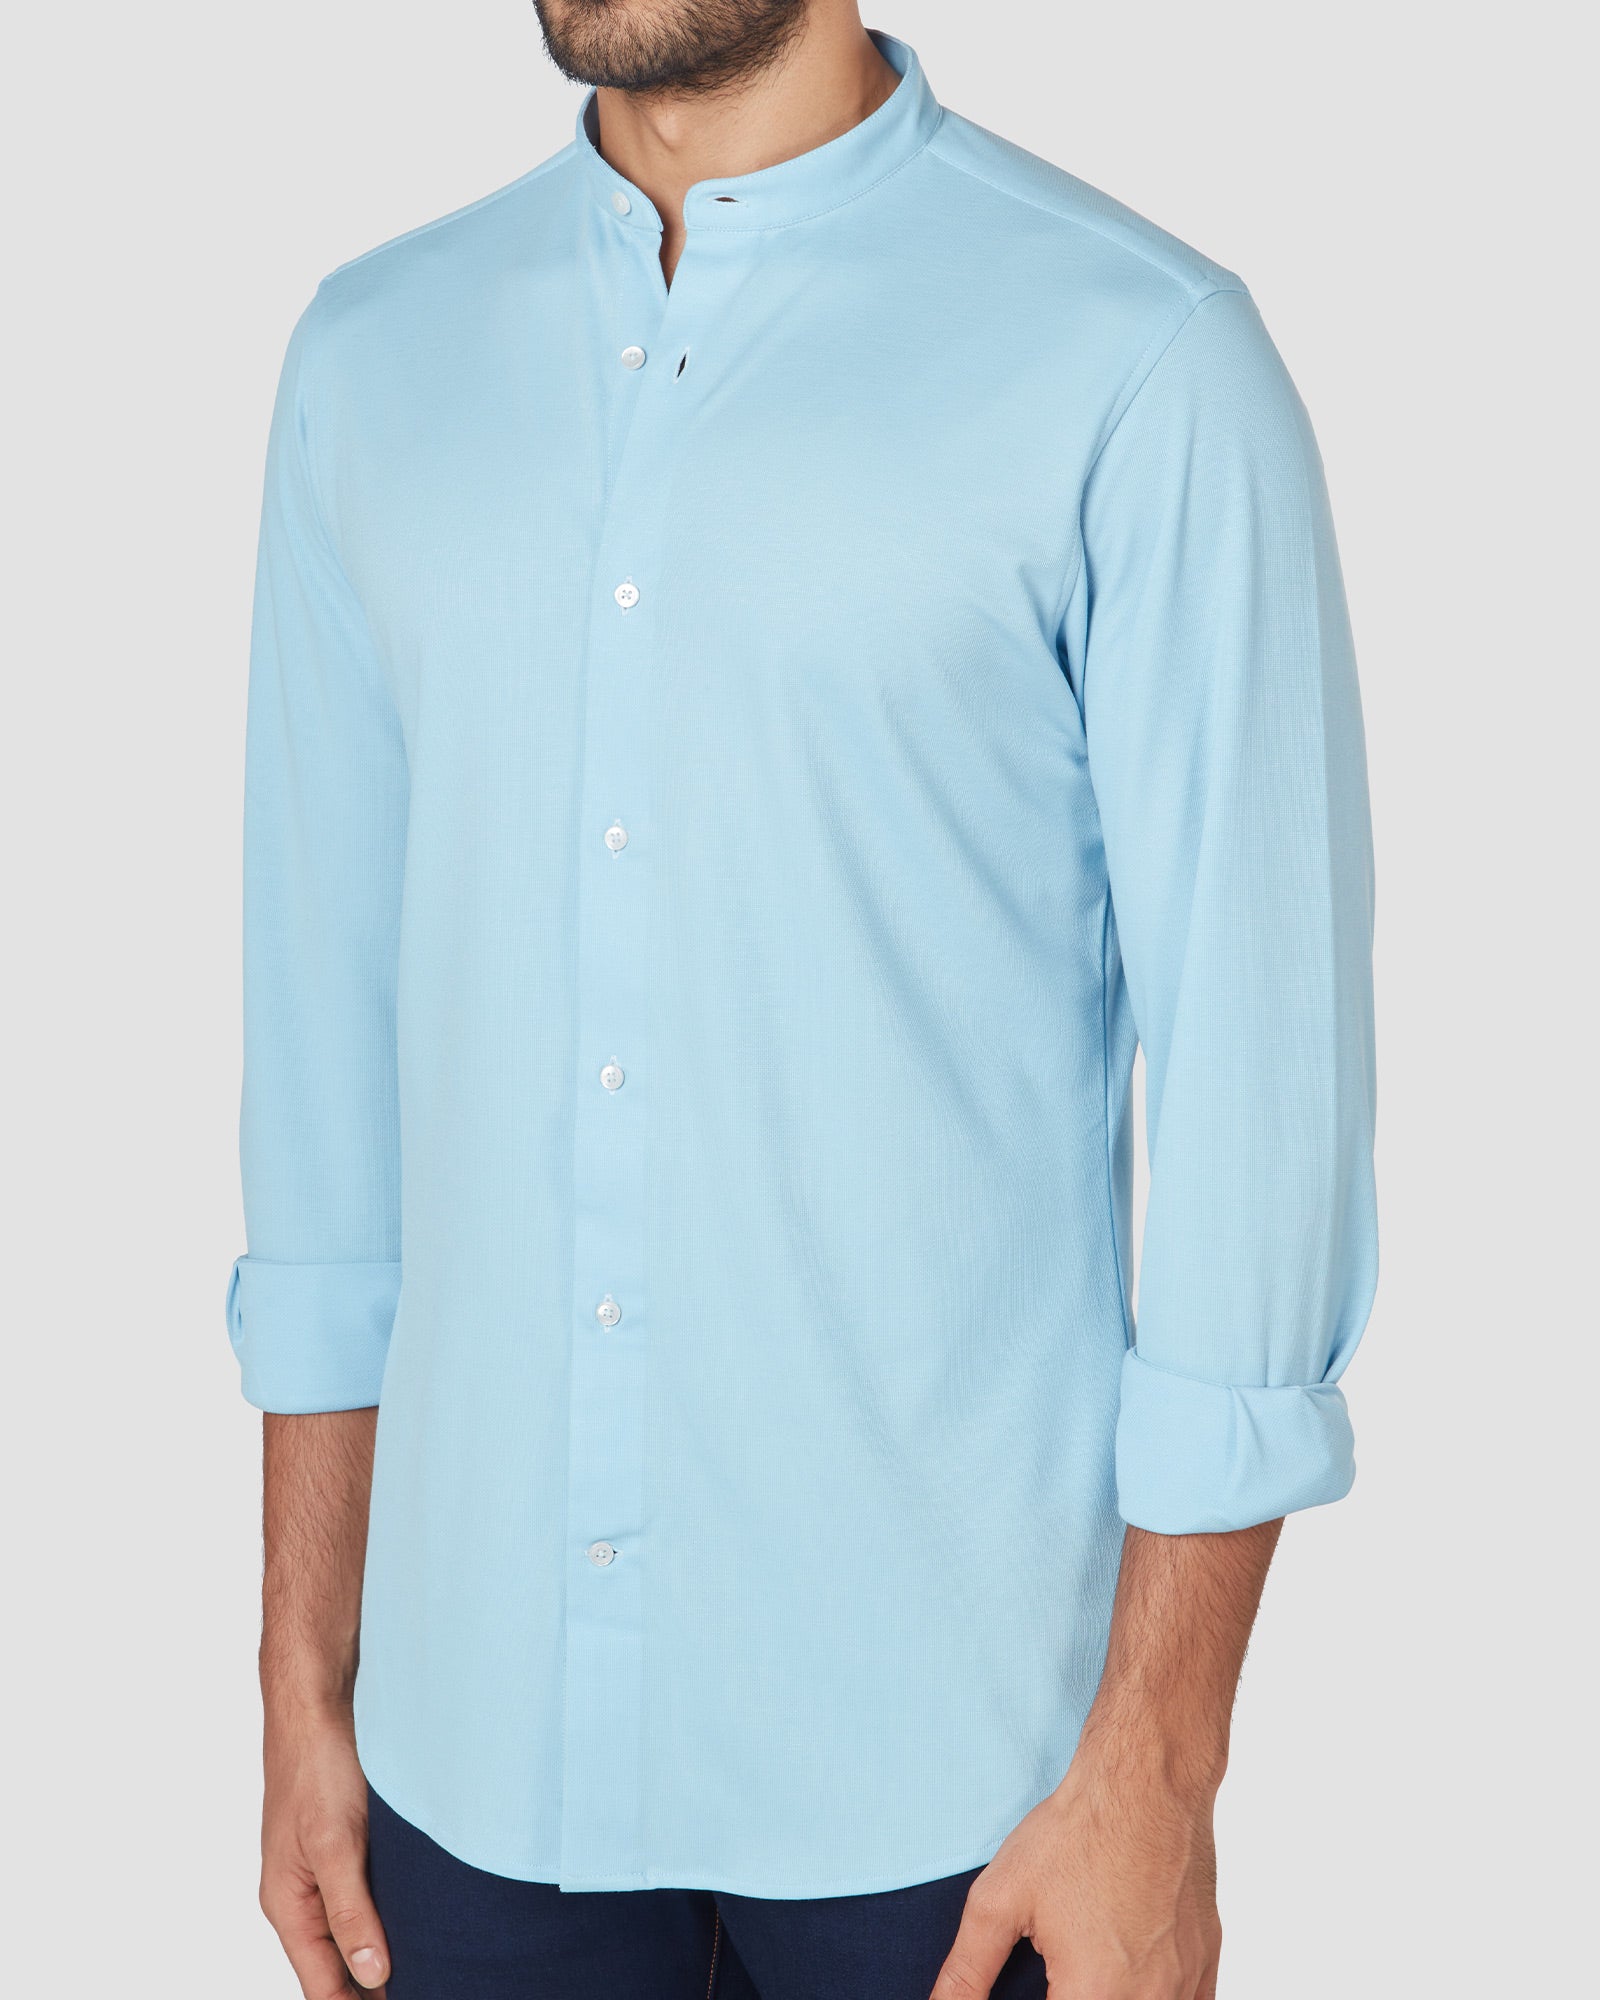 Bombay Shirt Company - Papagoite Knit Shirt